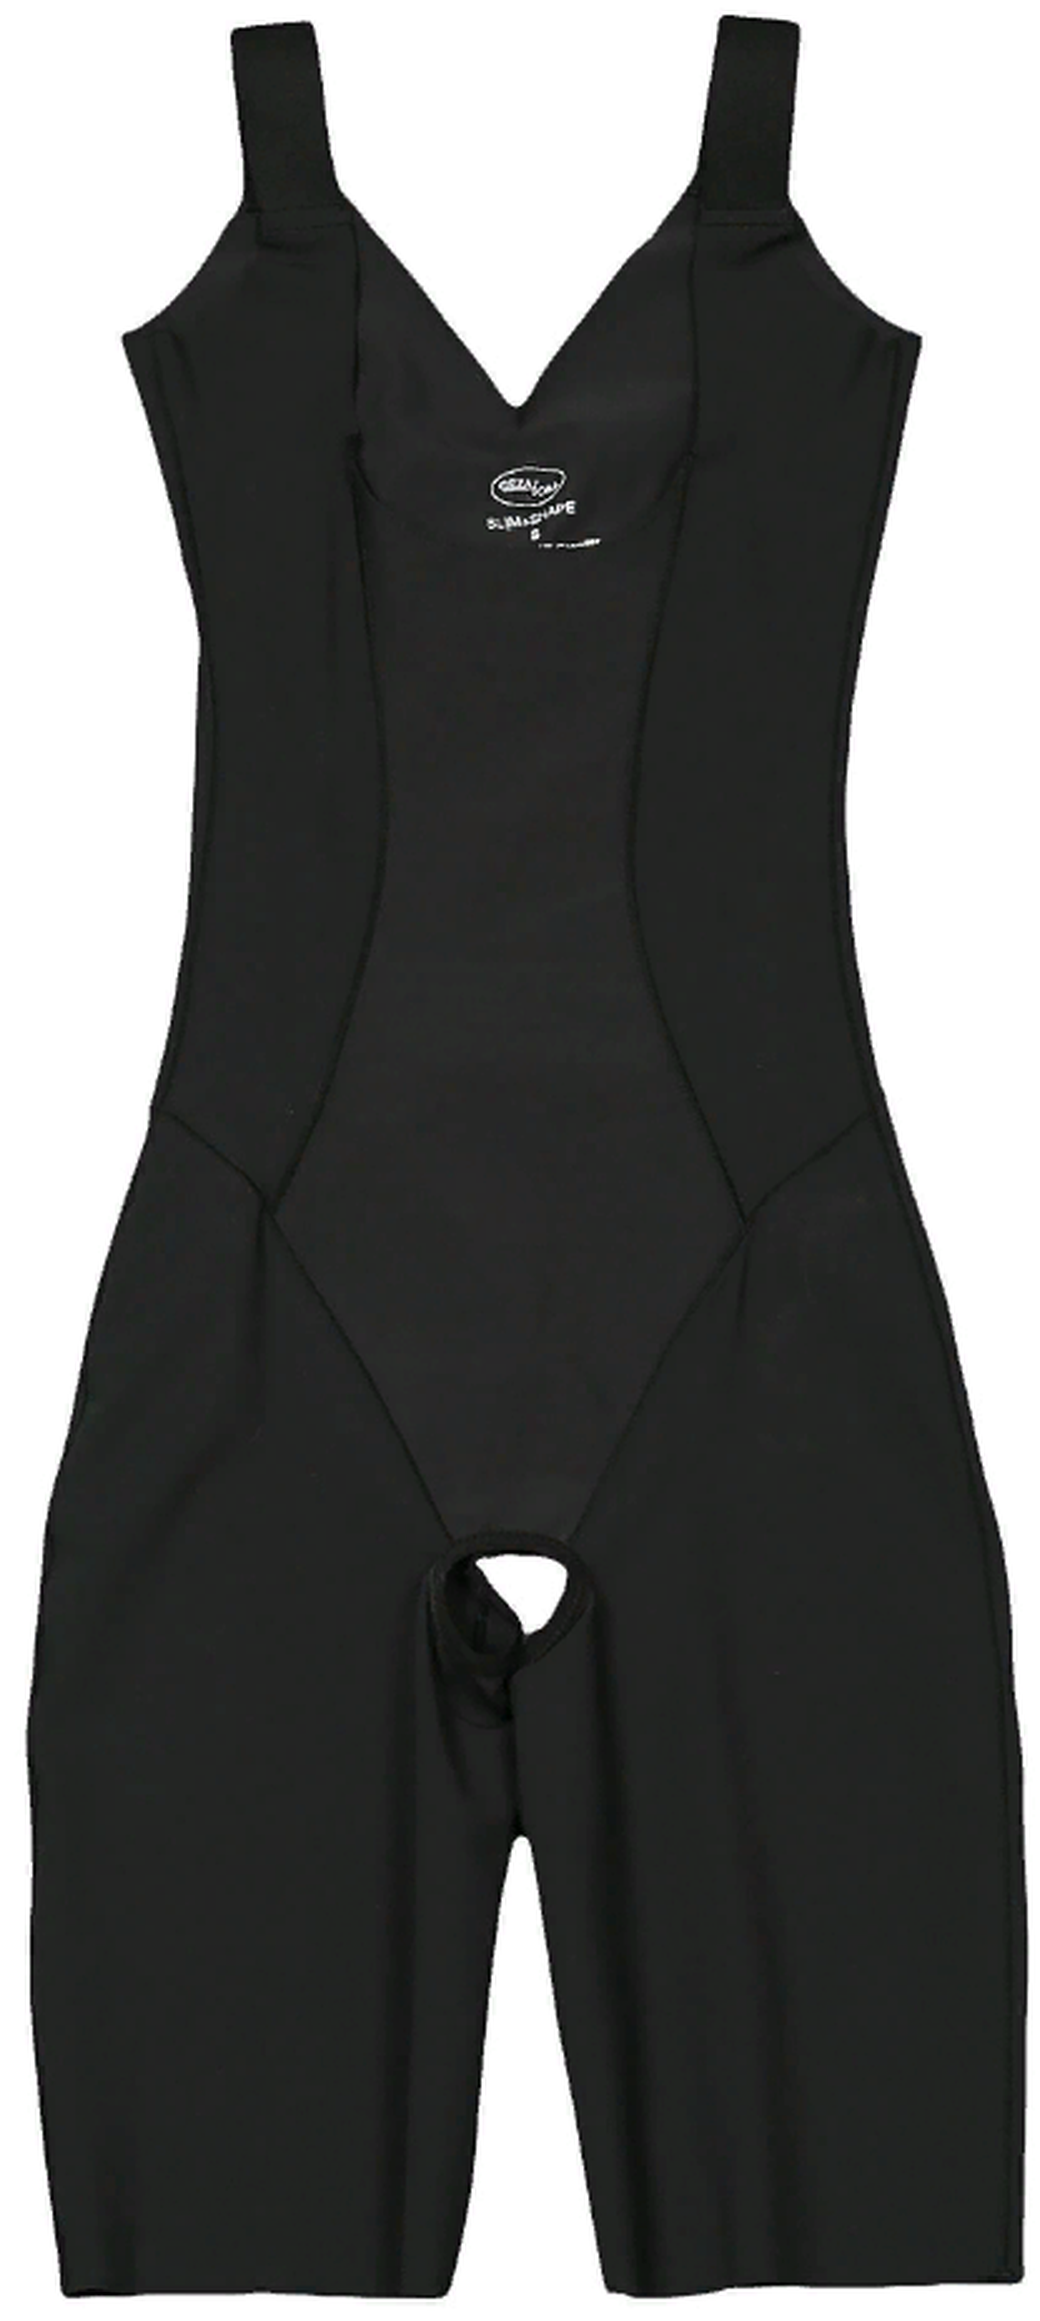 Корректирующее белье комбидрес Slim'n'Shape Bodysuit комбидрес Gezatone, черный, XS фото